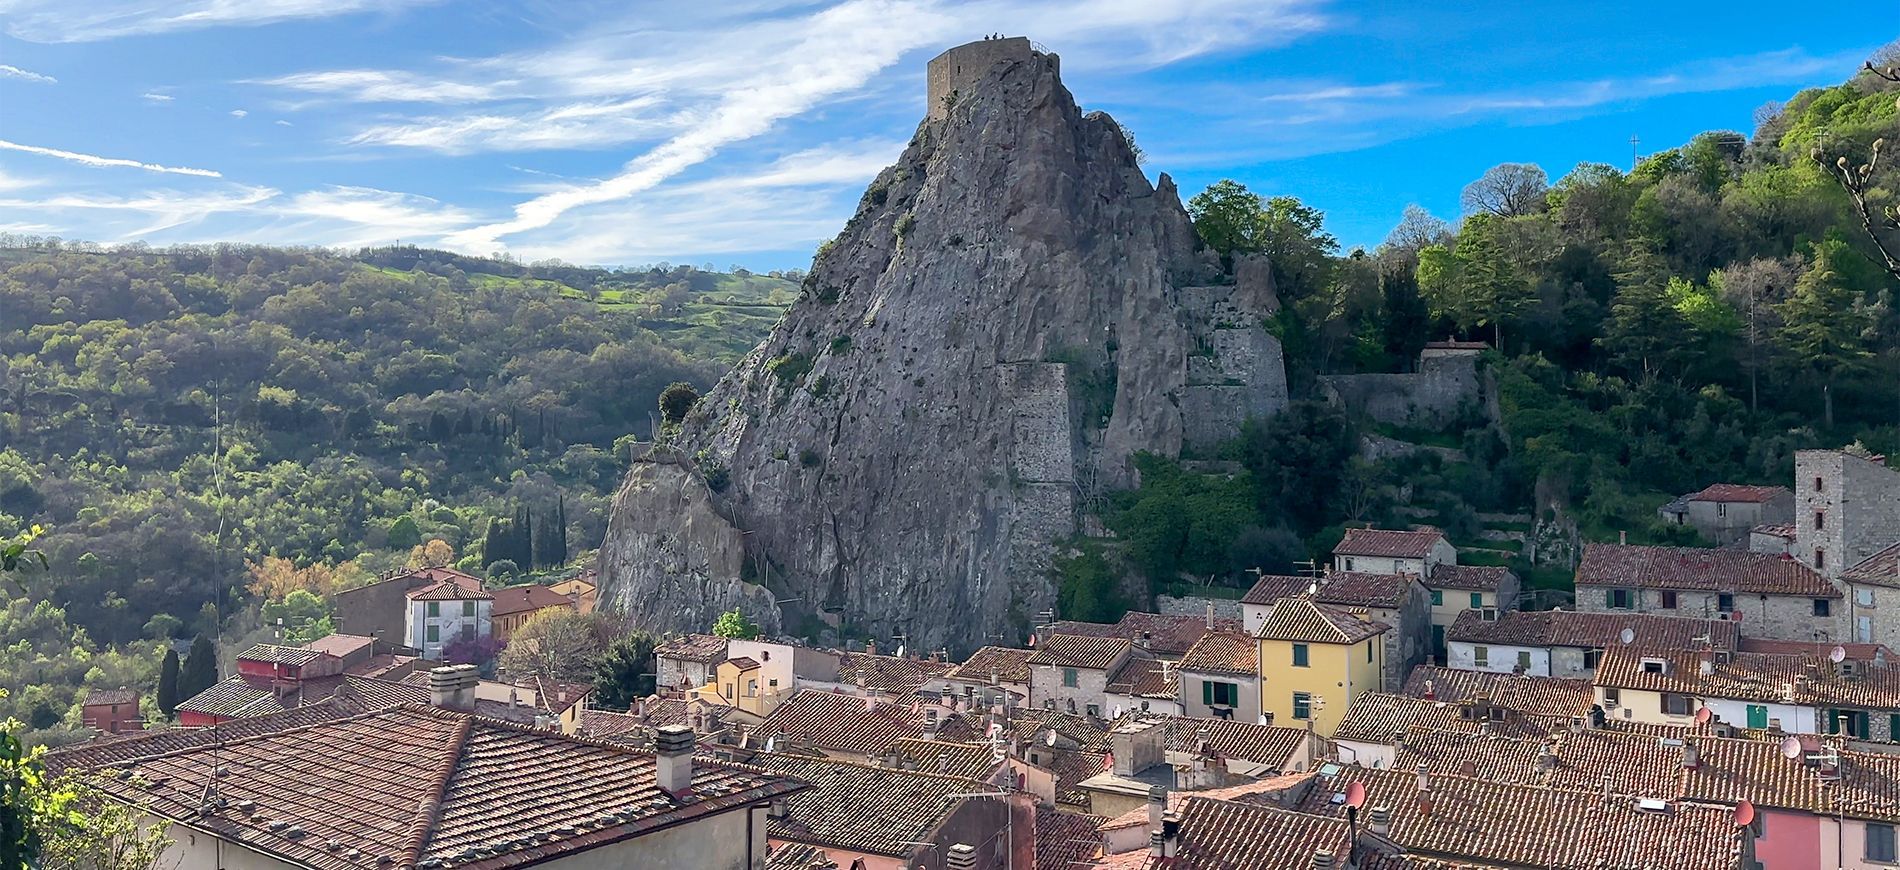 Il borgo di Roccalbegna, luogo particolare da visitare in Toscana con il Sasso che domina il paese.